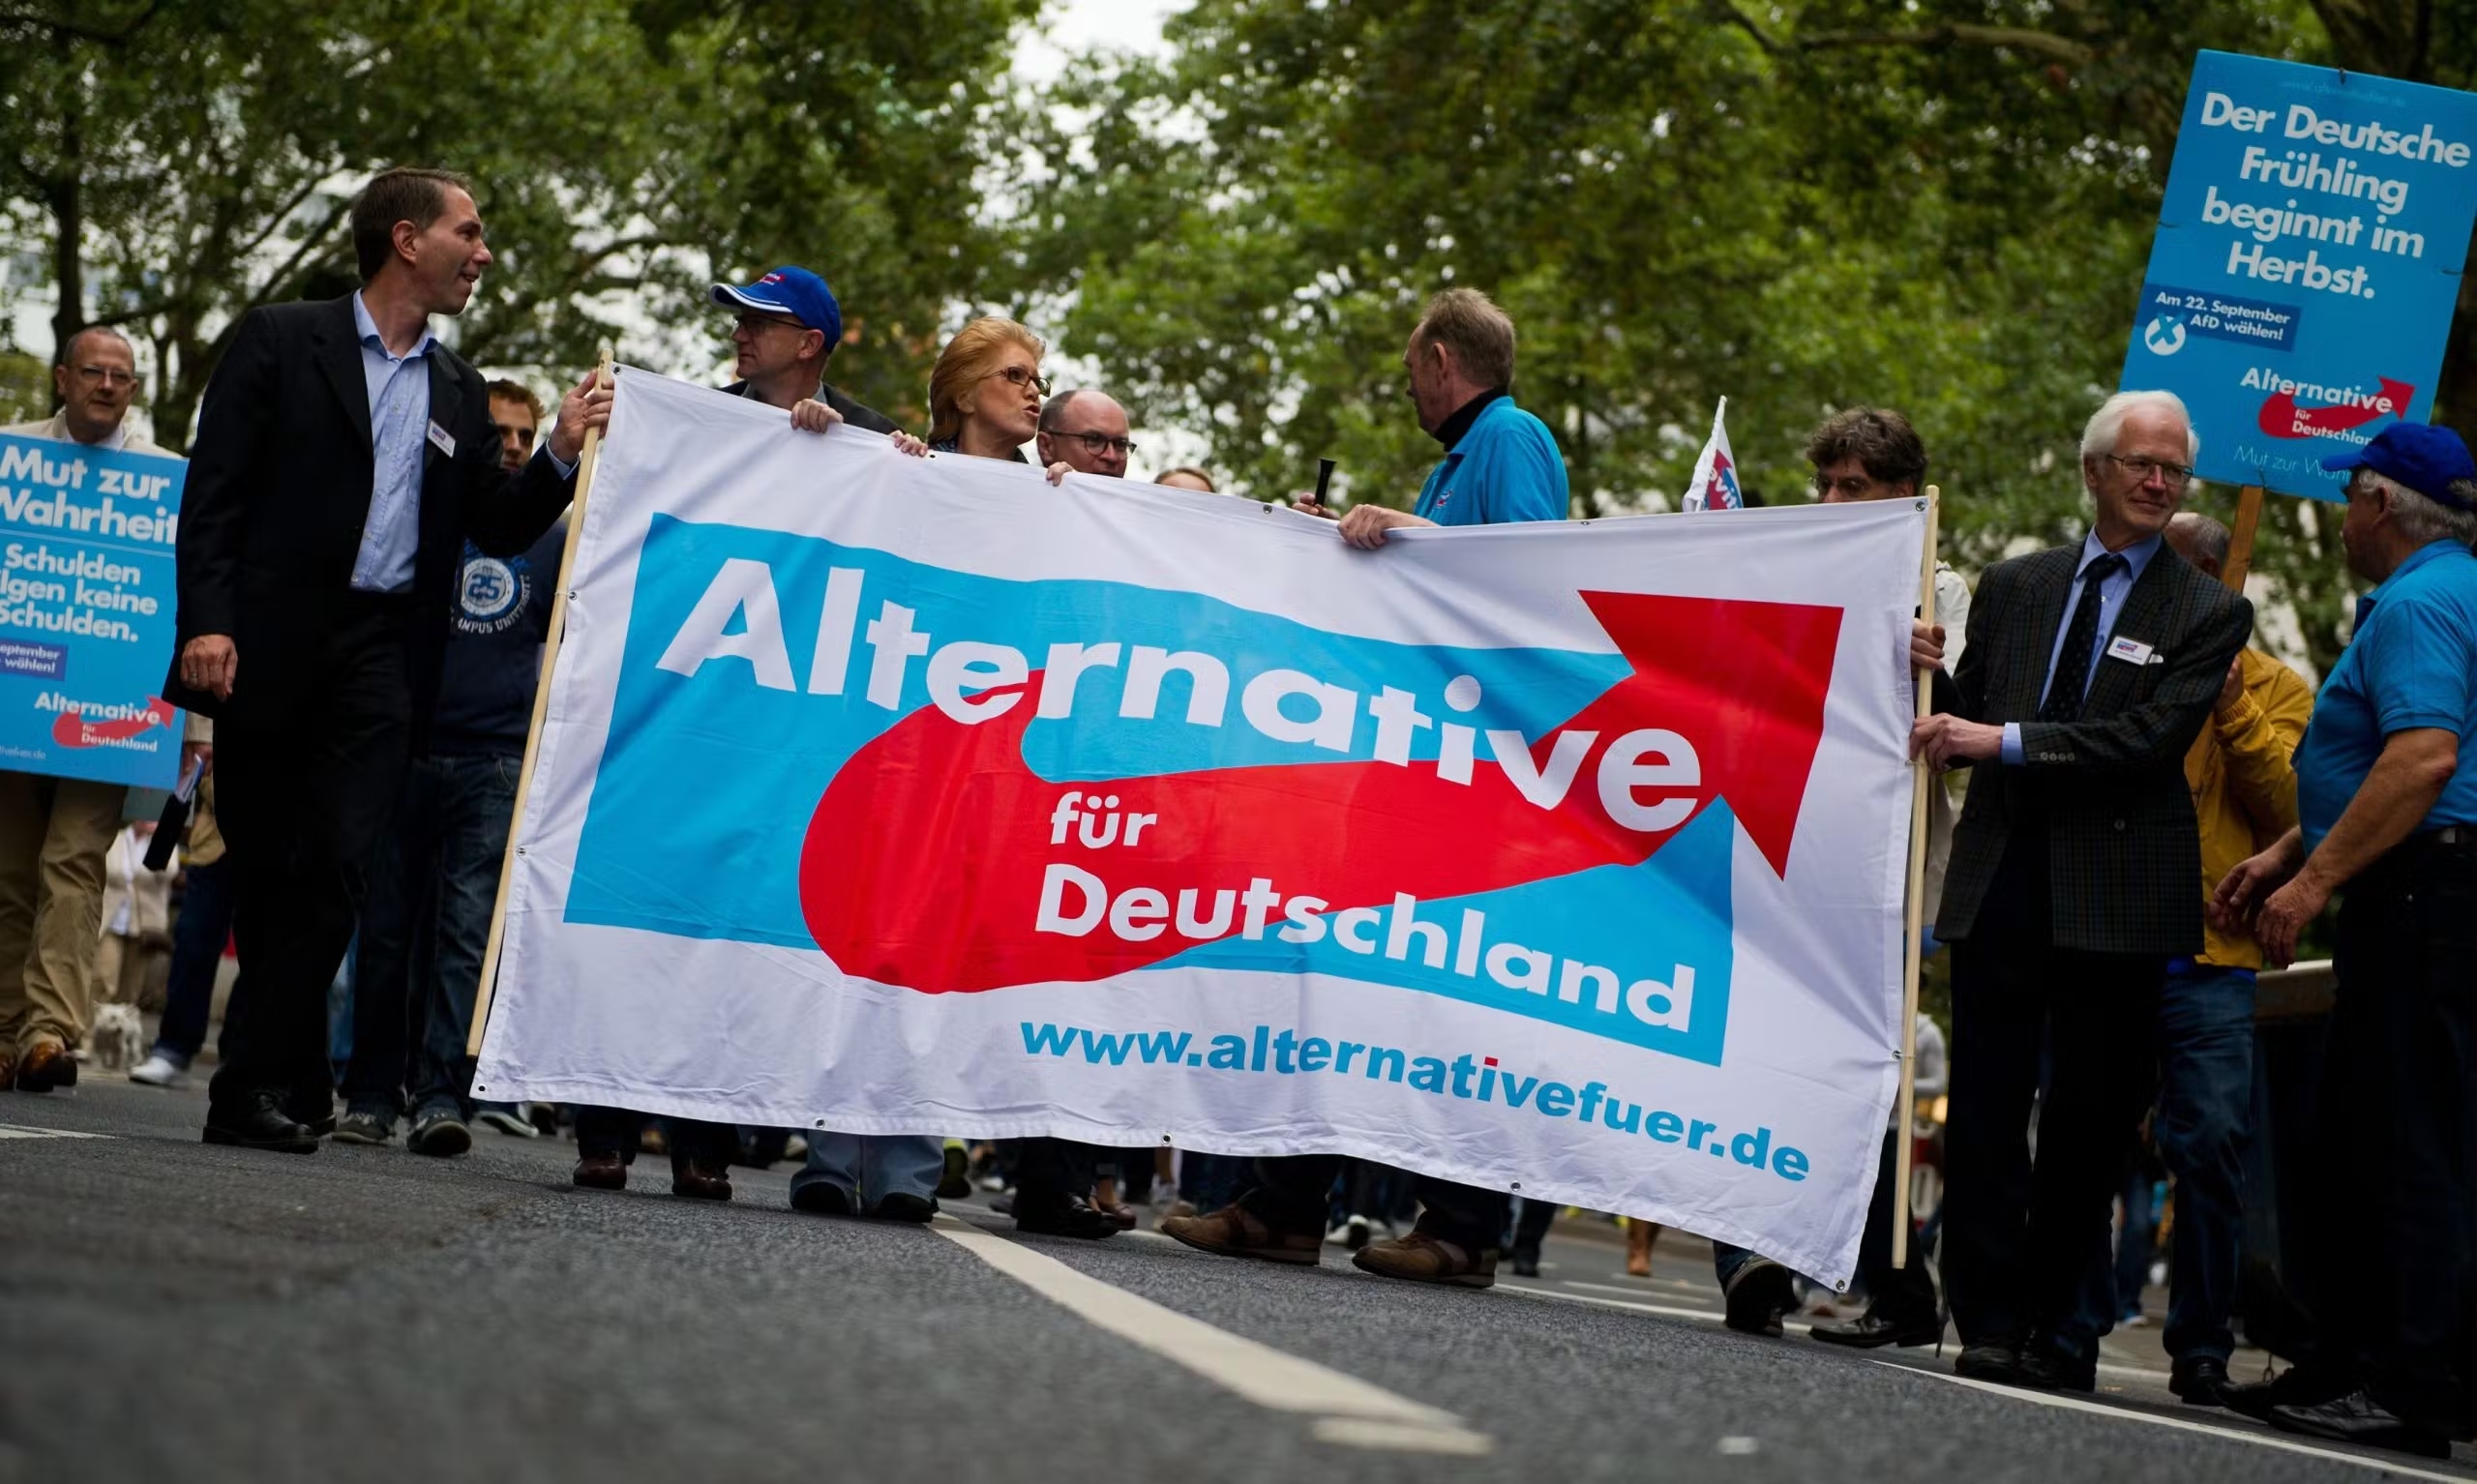 Γερμανία: Δημοσκόπηση φέρνει το AfD κοντά στο 20%